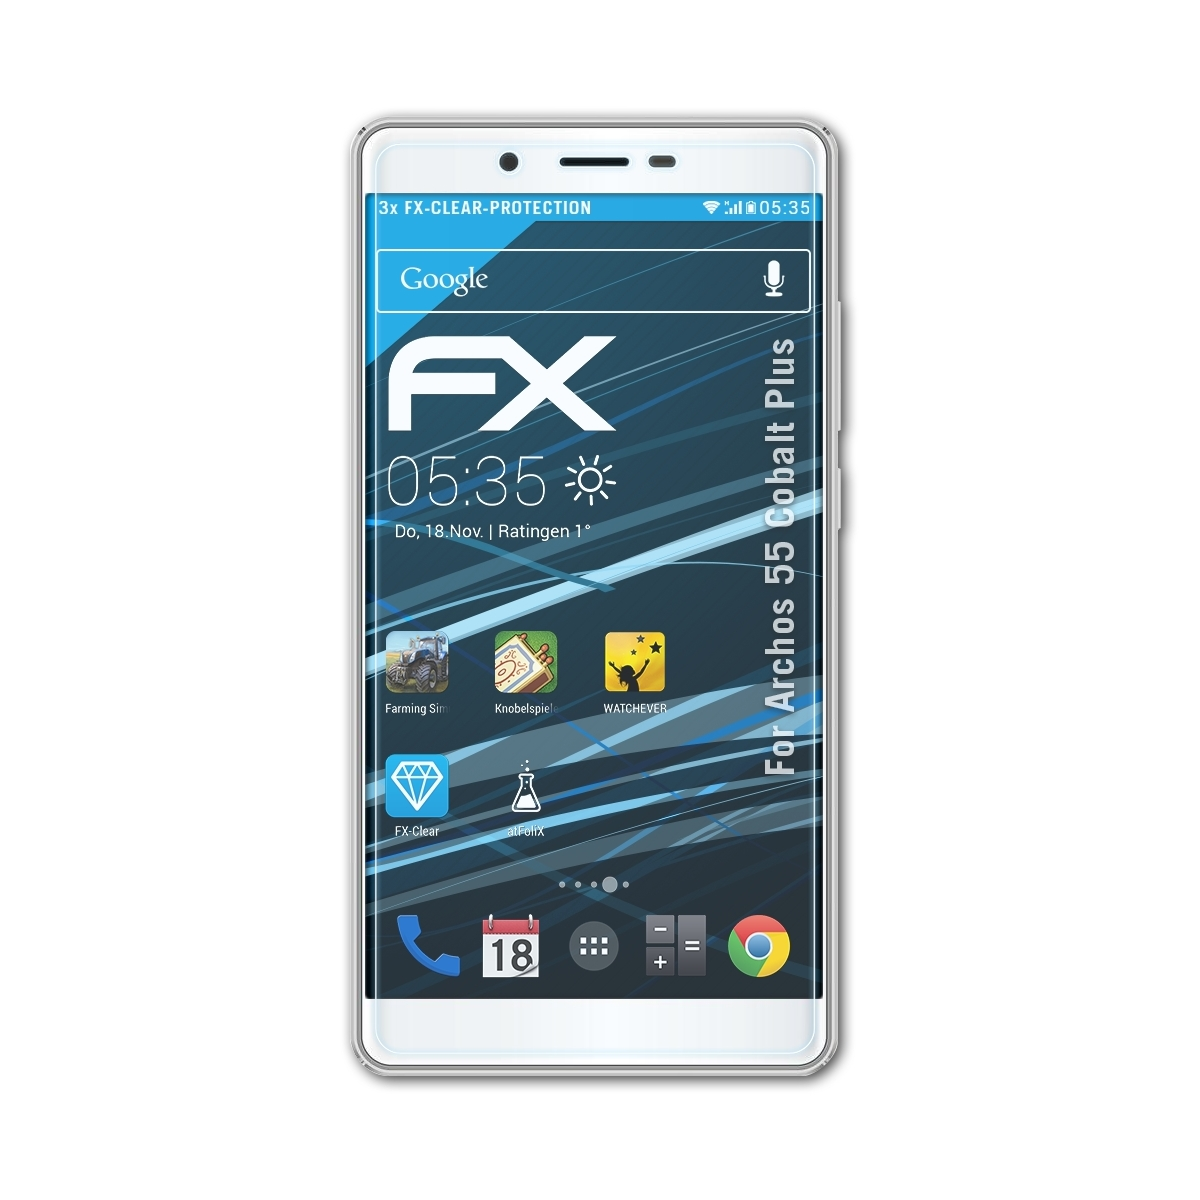 3x ATFOLIX FX-Clear Displayschutz(für Archos 55 Cobalt Plus)